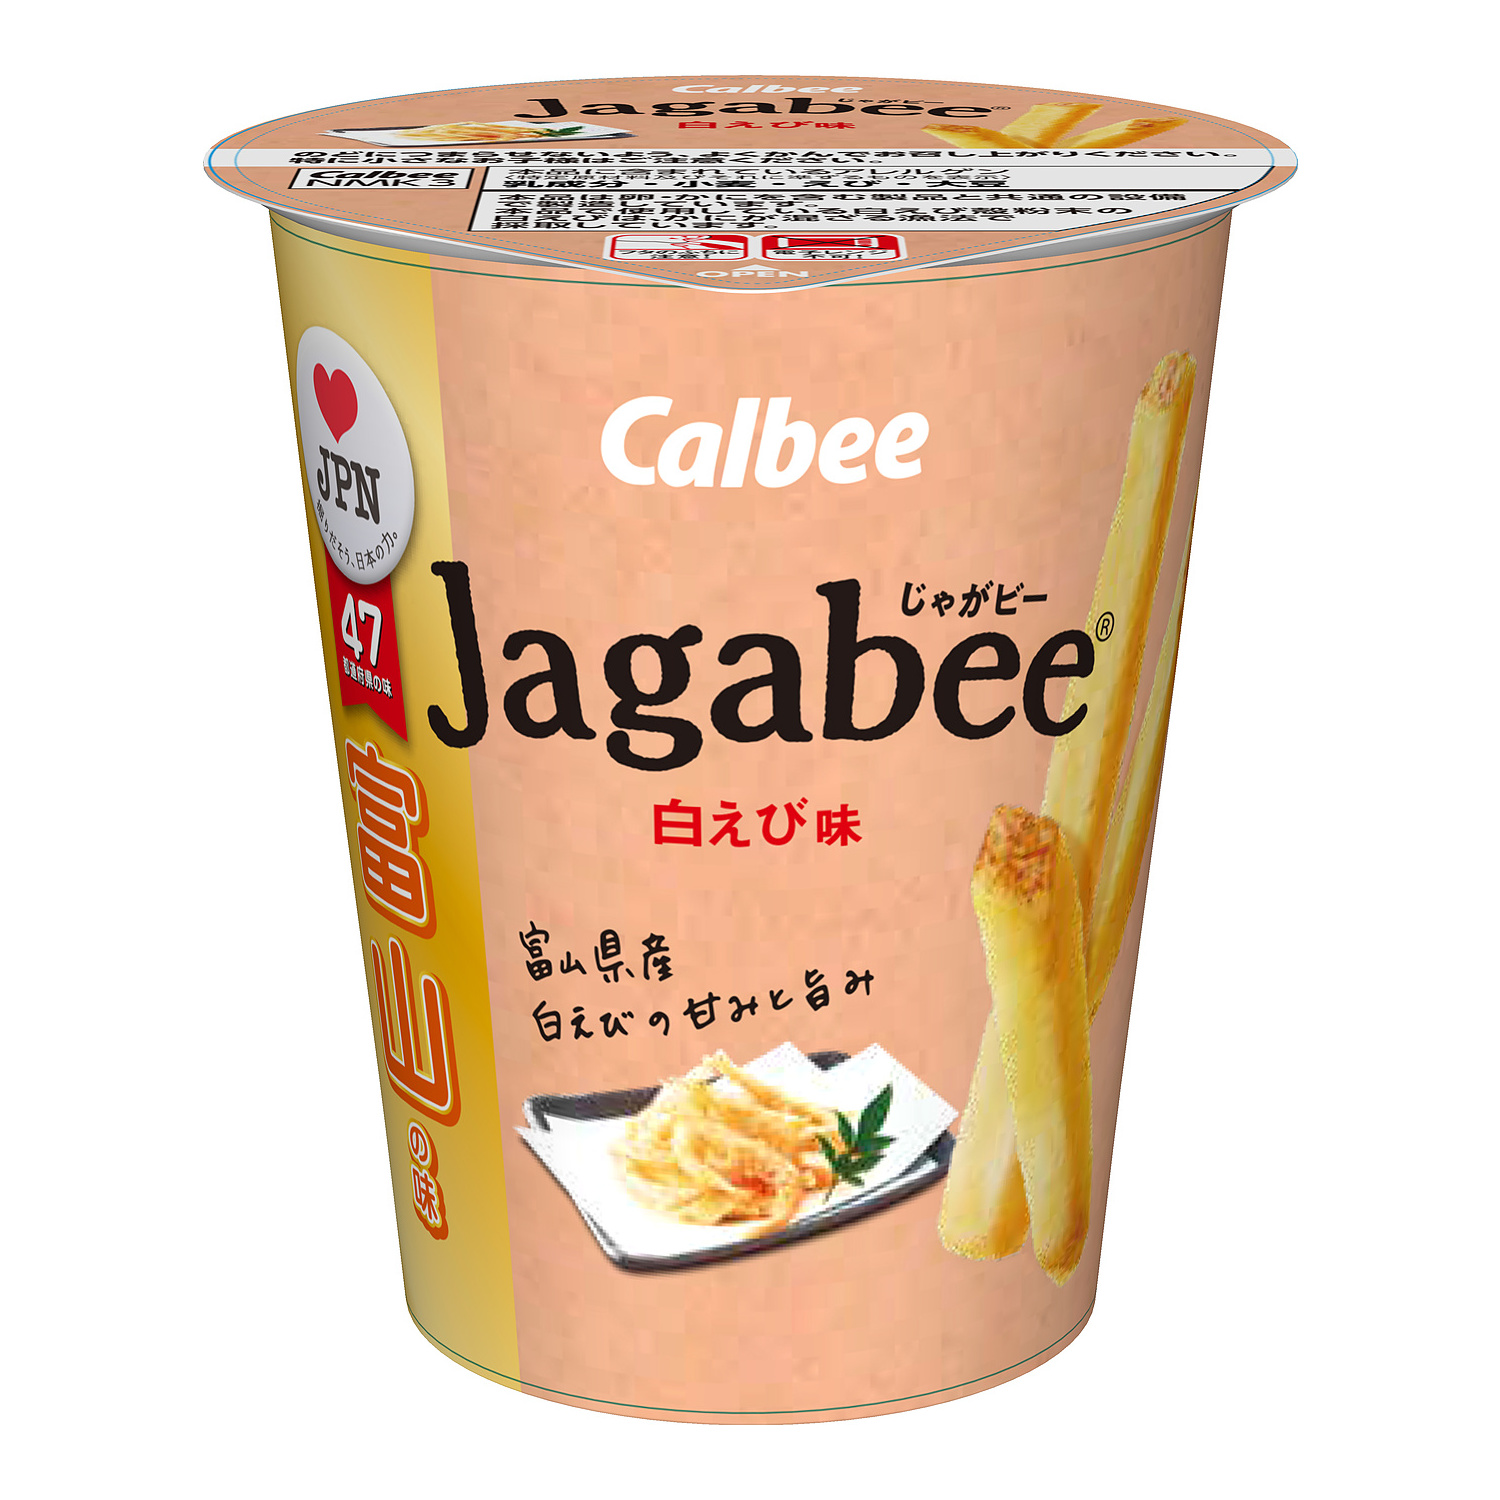 富山の味 Jagabee 白えび味 7月13日 月 発売富山湾の宝石 白えび の味わいを再現 カルビー株式会社のプレスリリース